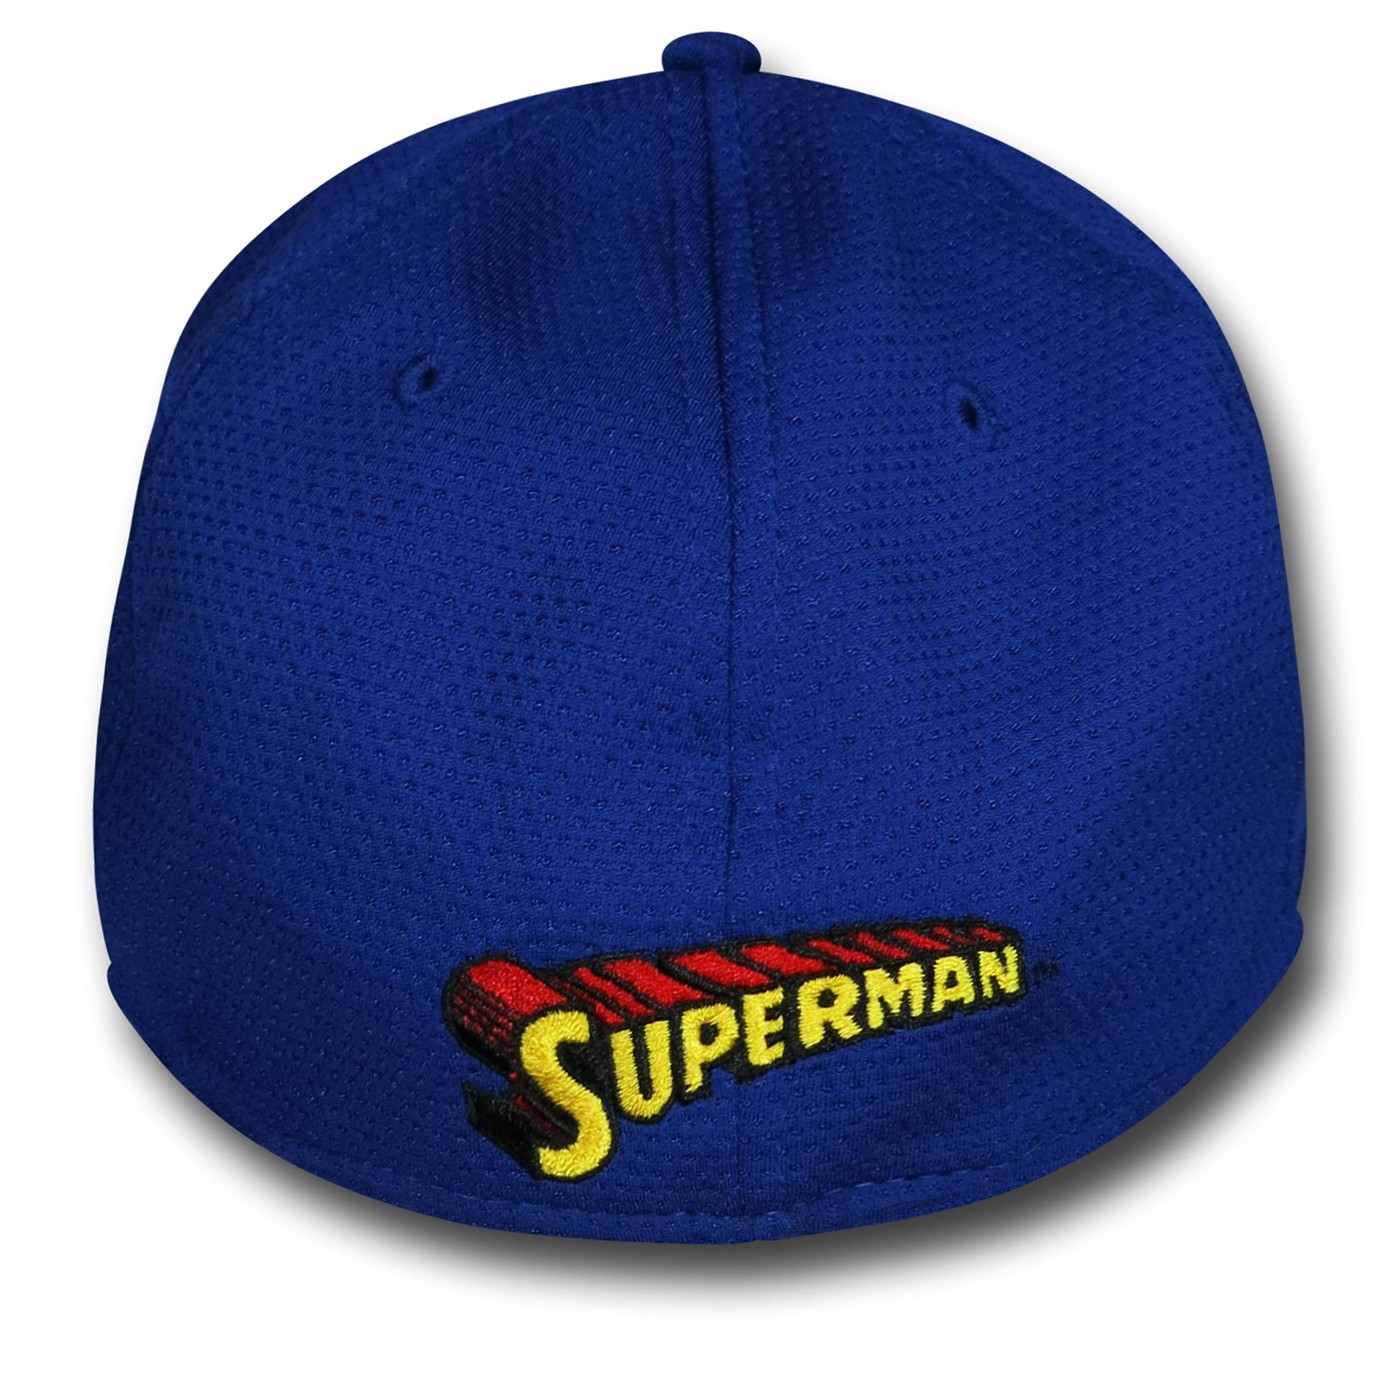 Superman 2 Tone Hero 59Fifty Cap